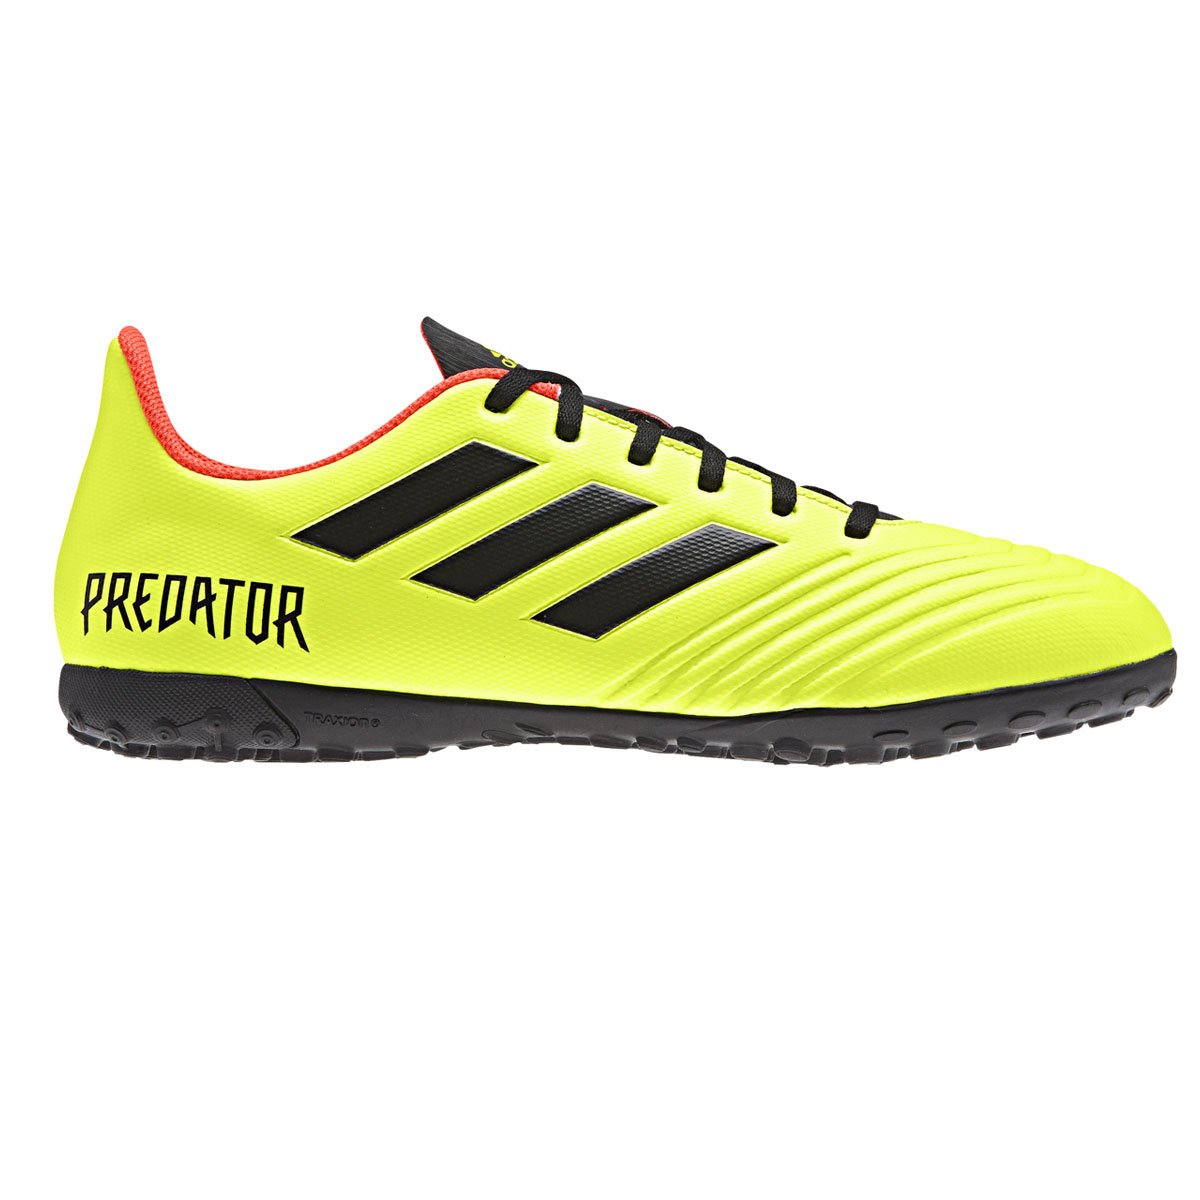 Calzado Soccer Predator Tango 18.4 Adidas - Caballero